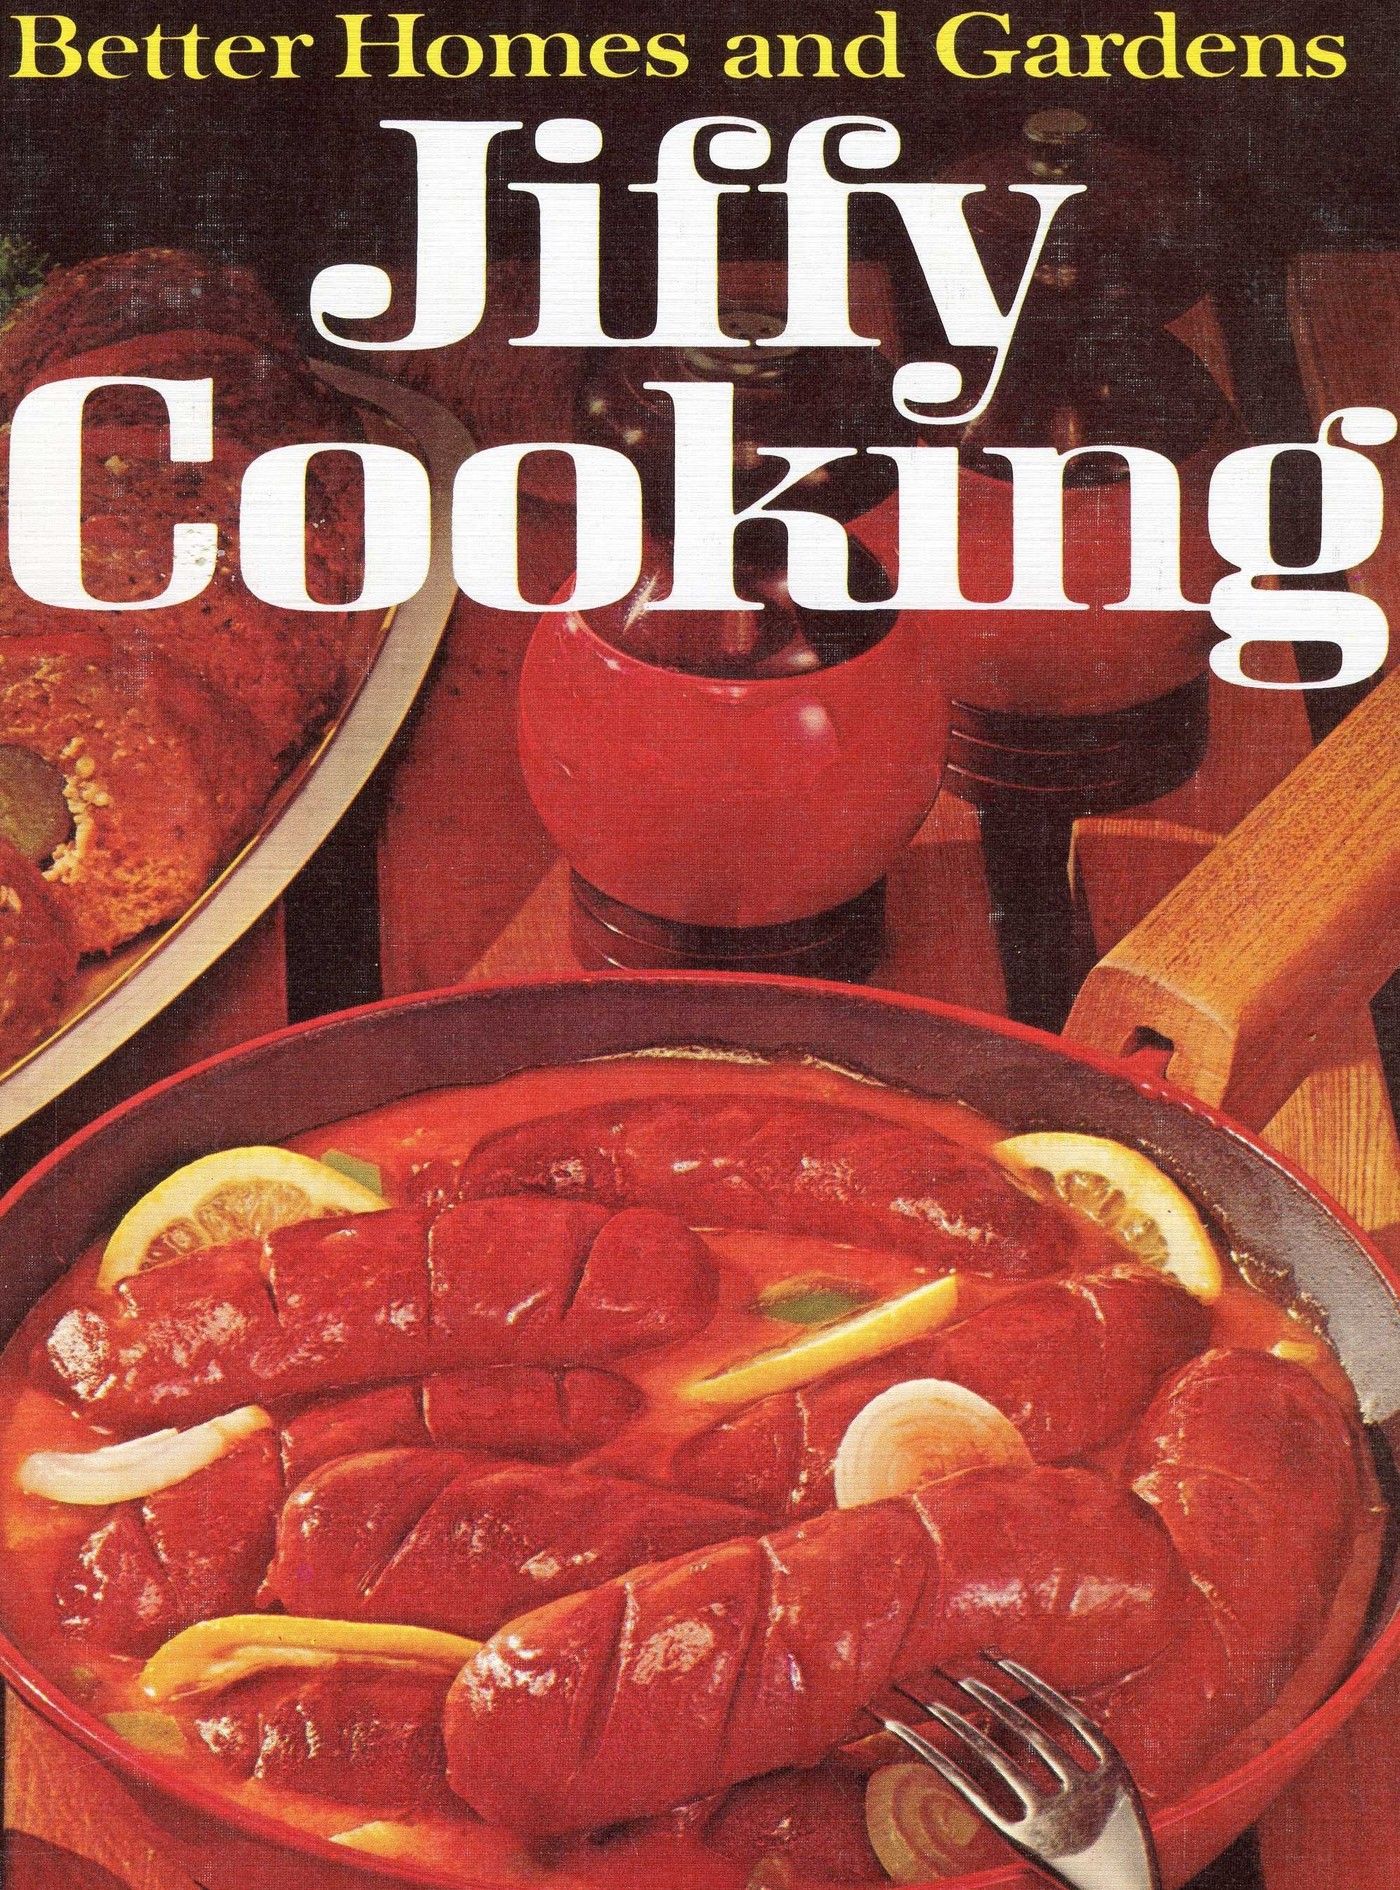 My Cookbook. My Recipe book.